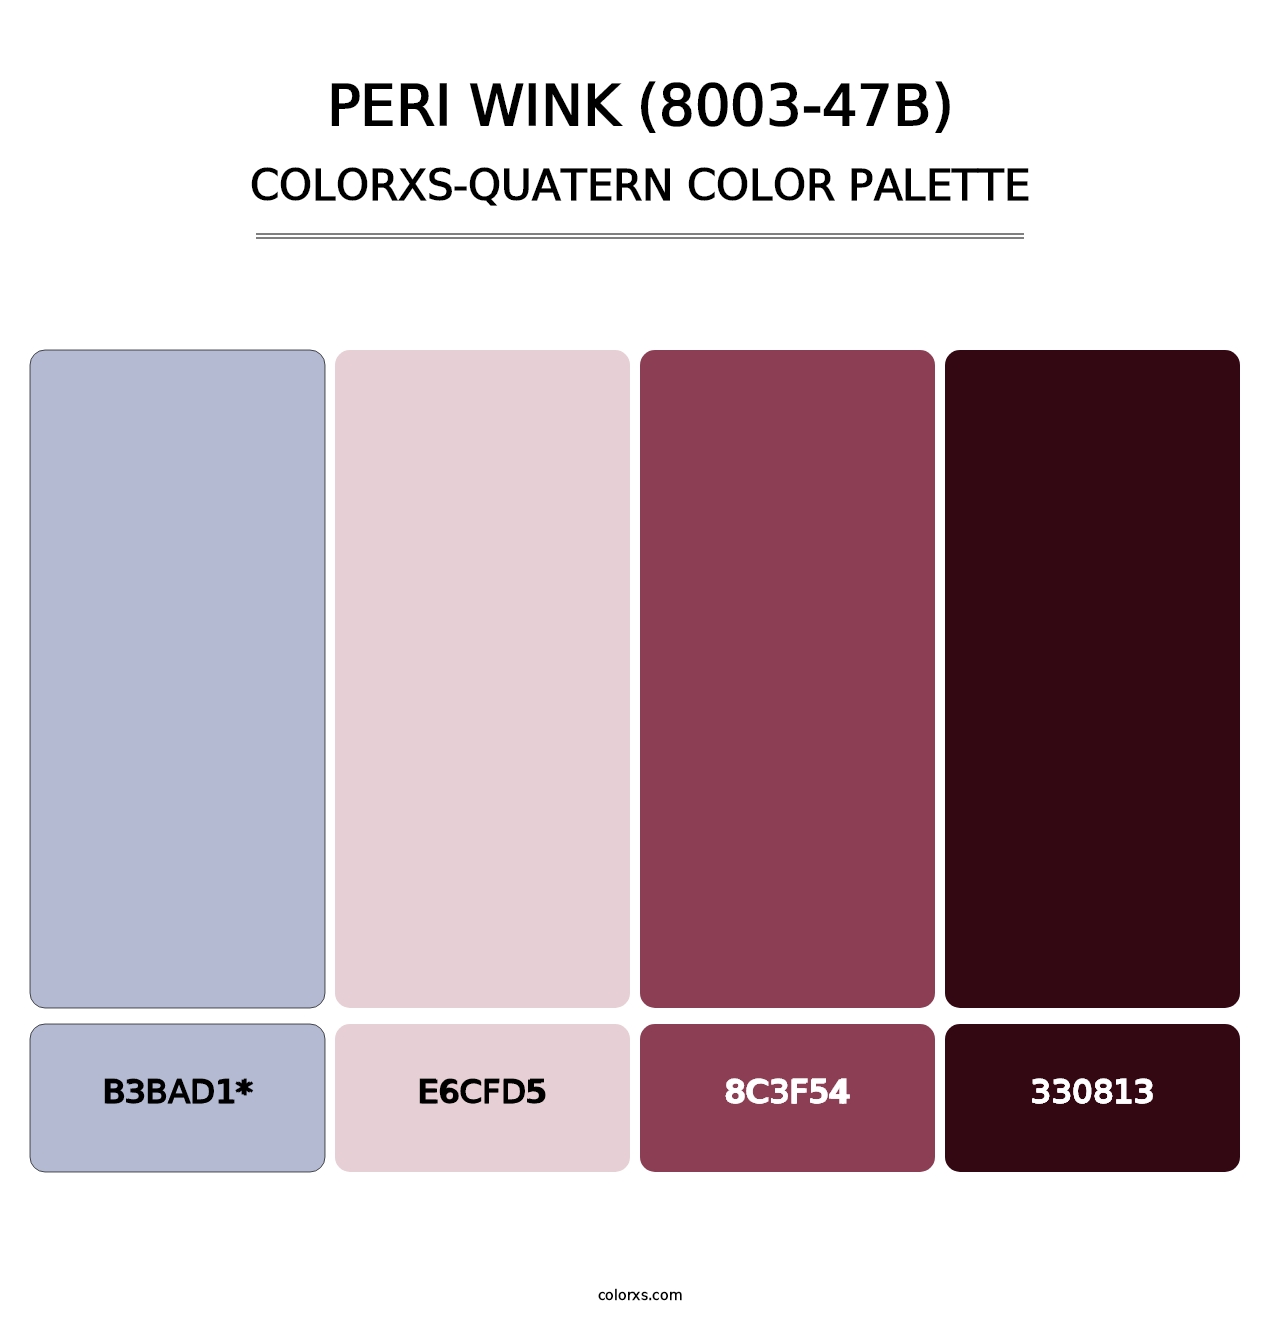 Peri Wink (8003-47B) - Colorxs Quatern Palette